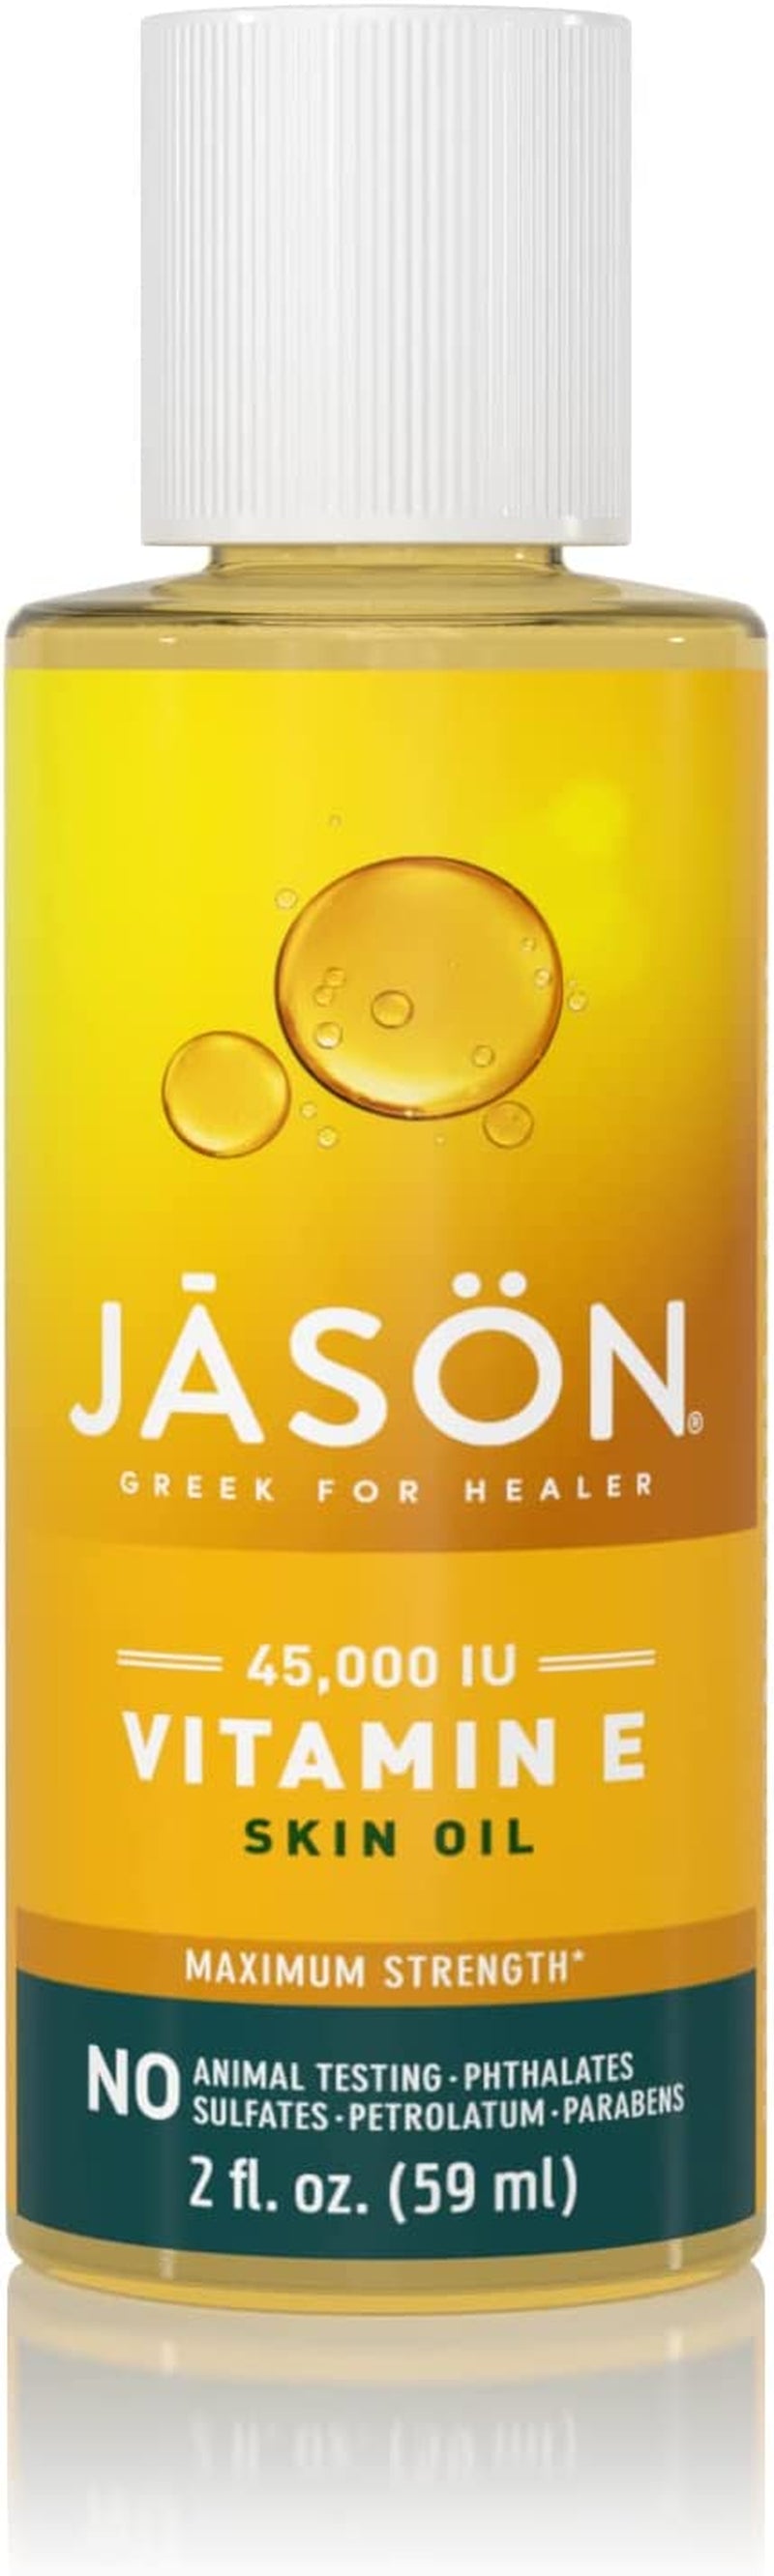 JĀSÖN Maximum Strength Skin Oil, Vitamin E 45,000 IU, 2 Oz